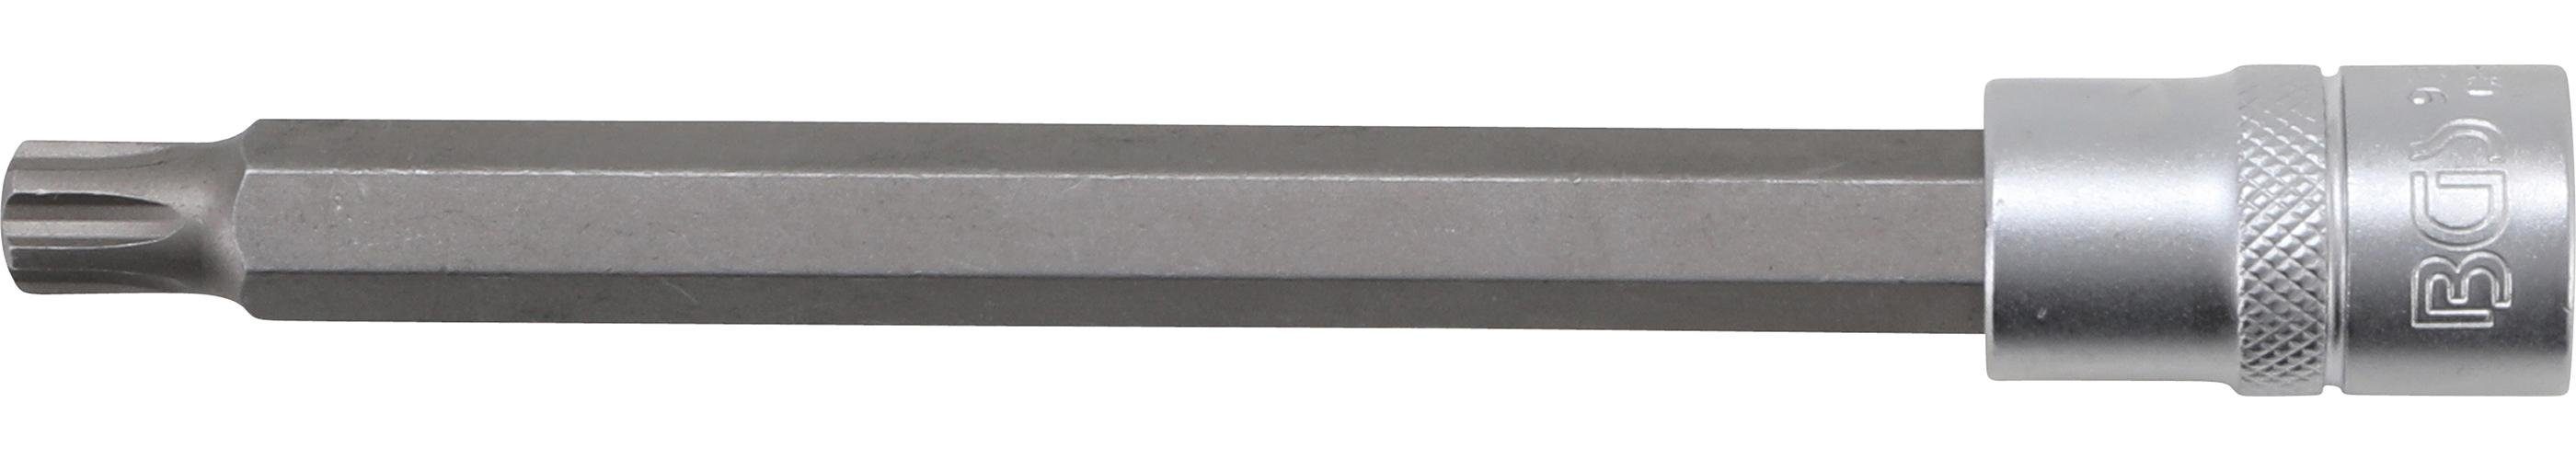 BGS technic Bit-Schraubendreher Bit-Einsatz, Länge 168 mm, Antrieb Innenvierkant 12,5 mm (1/2), für VAG Polydrive Zylinderkopfschrauben